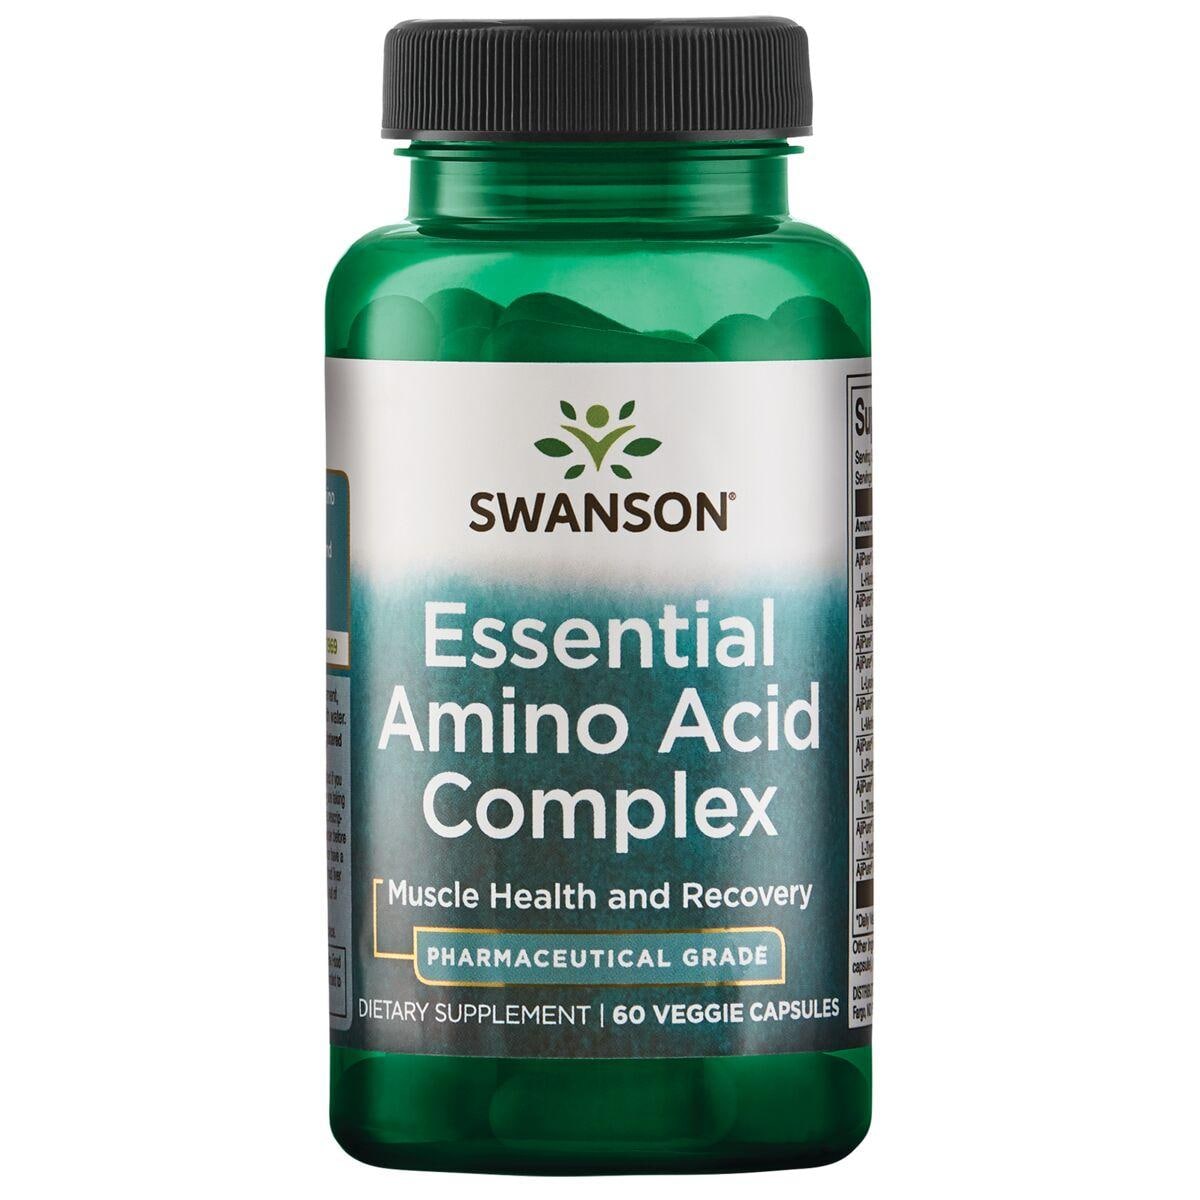 Swanson Ultra Essential Amino Acid Complex - Pharmaceutical Grade Supplement Vitamin | 60 Veg Caps